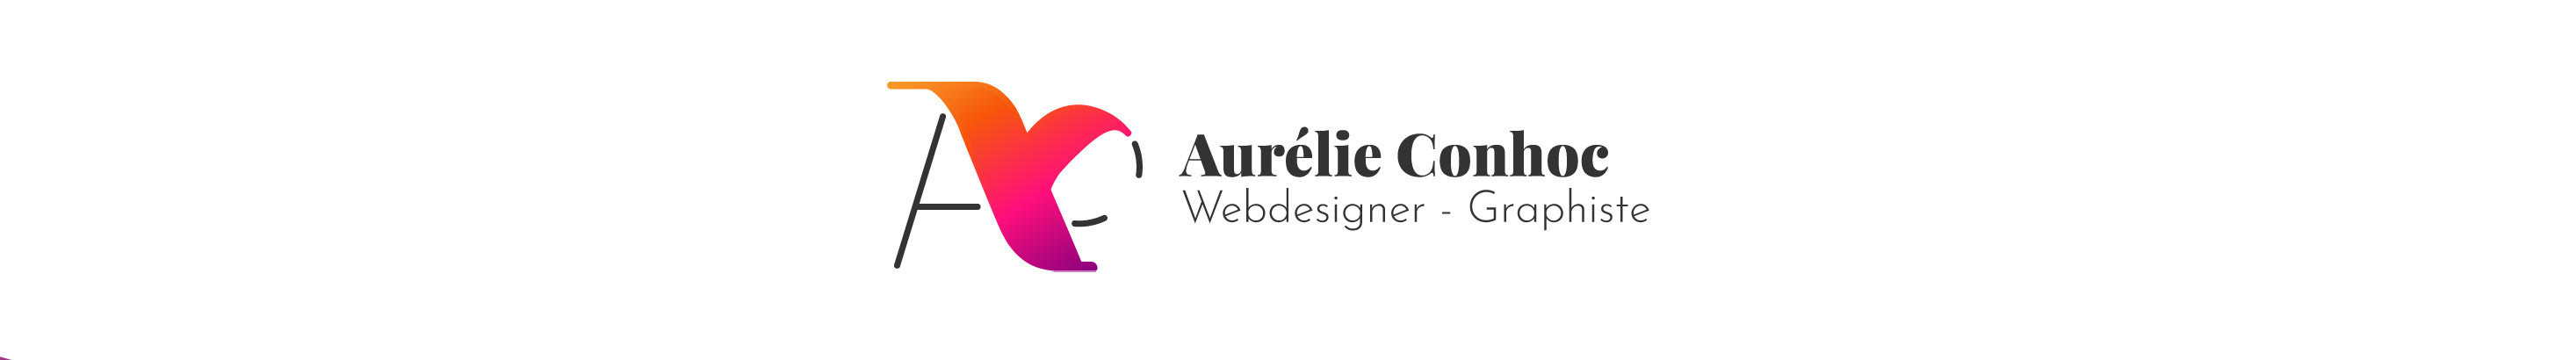 Aurélie Conhoc's profile banner